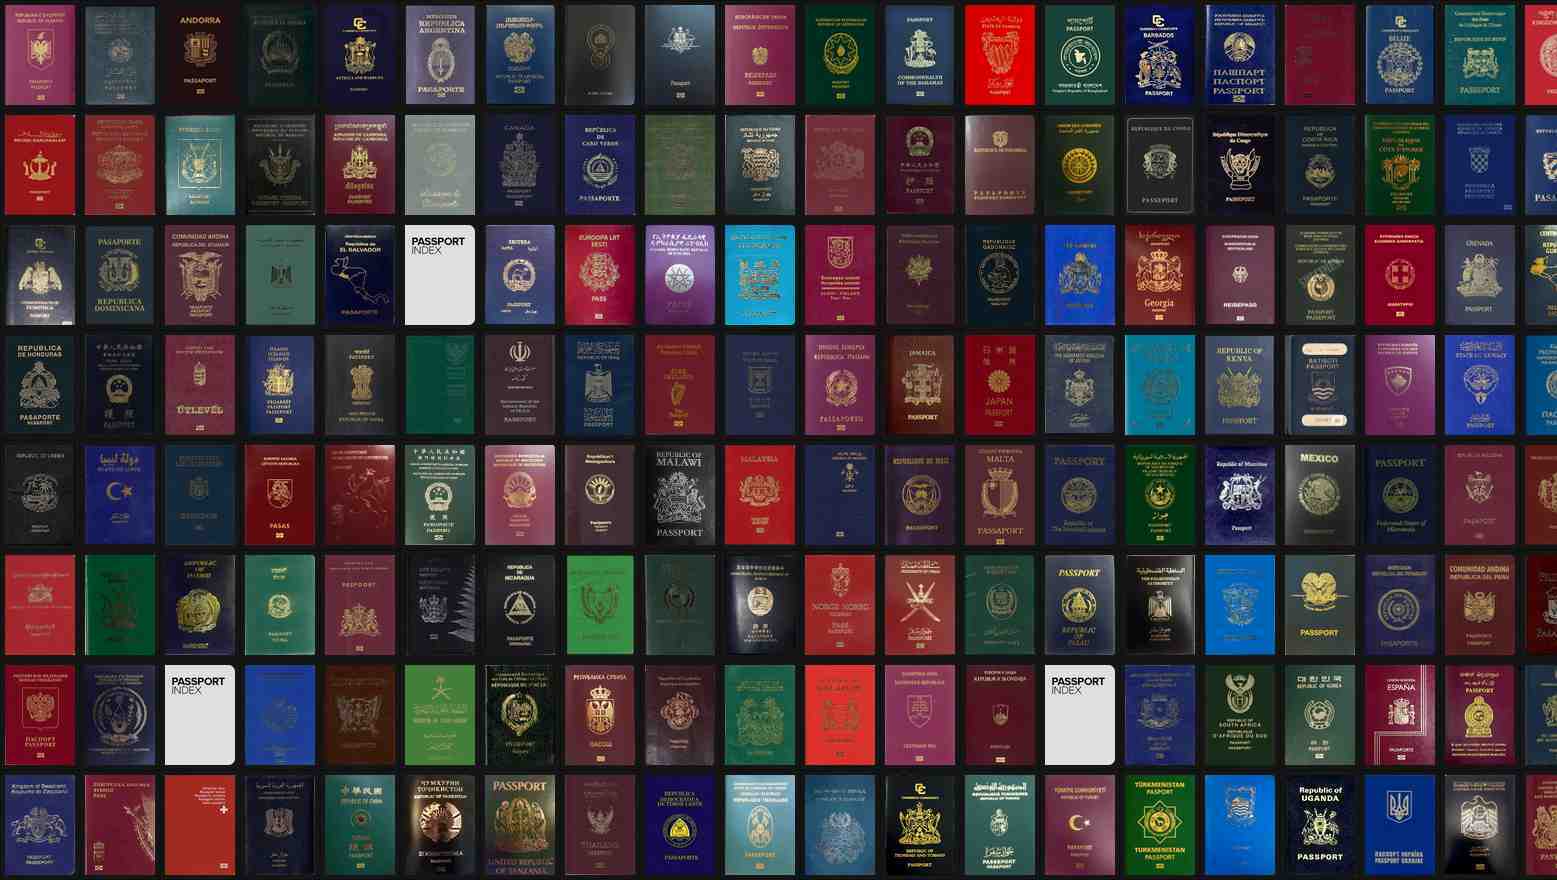 دنیا کاطاقتور ترین پاسپورٹ جاپانی شہریوں کے پاس،190ملکوں میں بغیر ویزہ سفرکی سہولت دستیاب